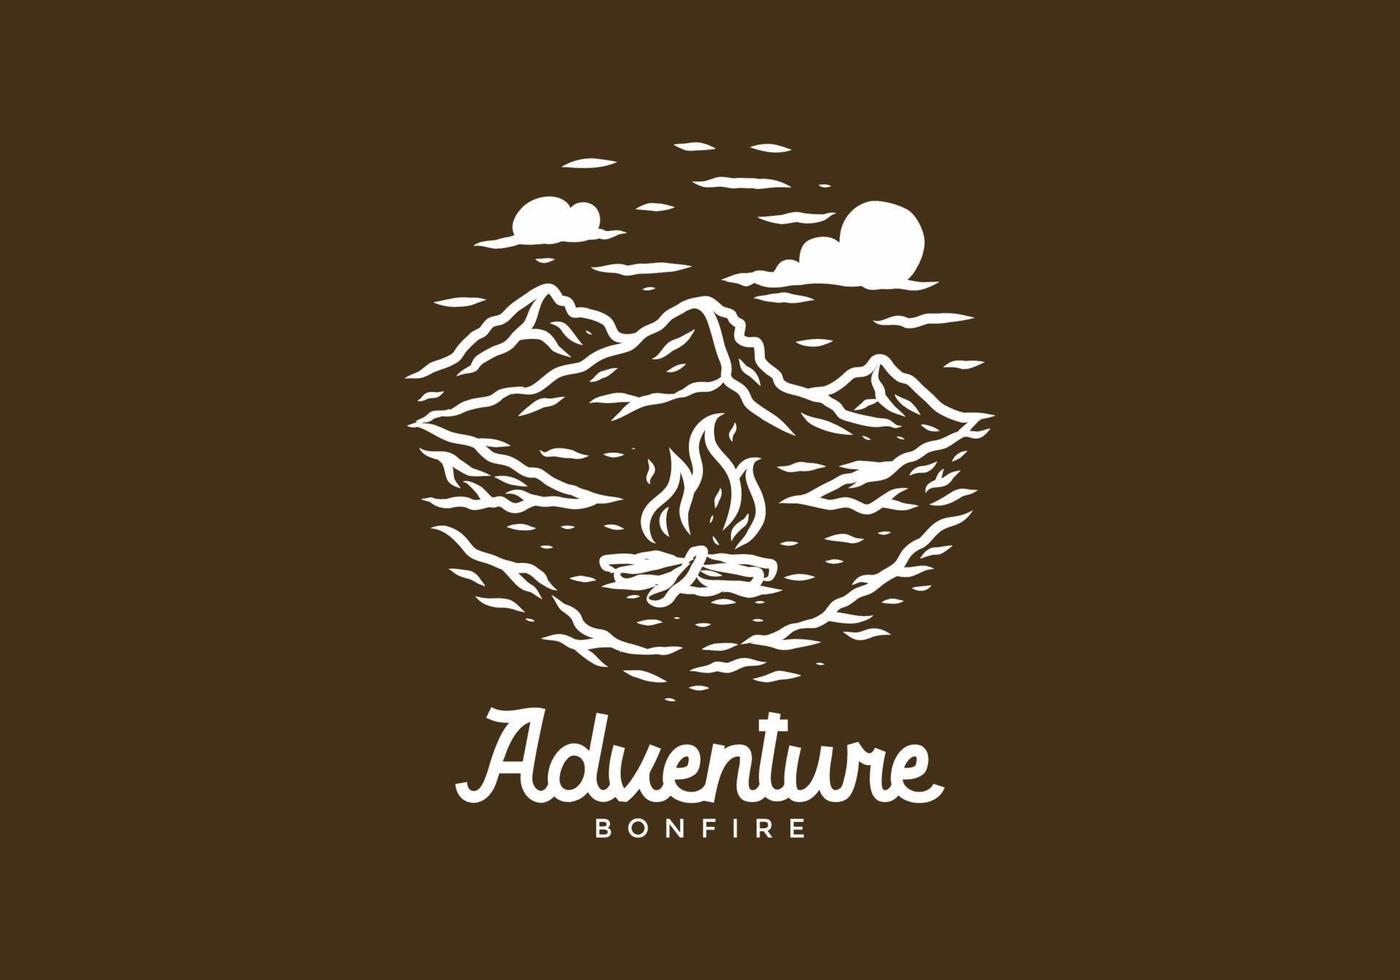 cor marrom branca do desenho de ilustração de acampamento de aventura vetor